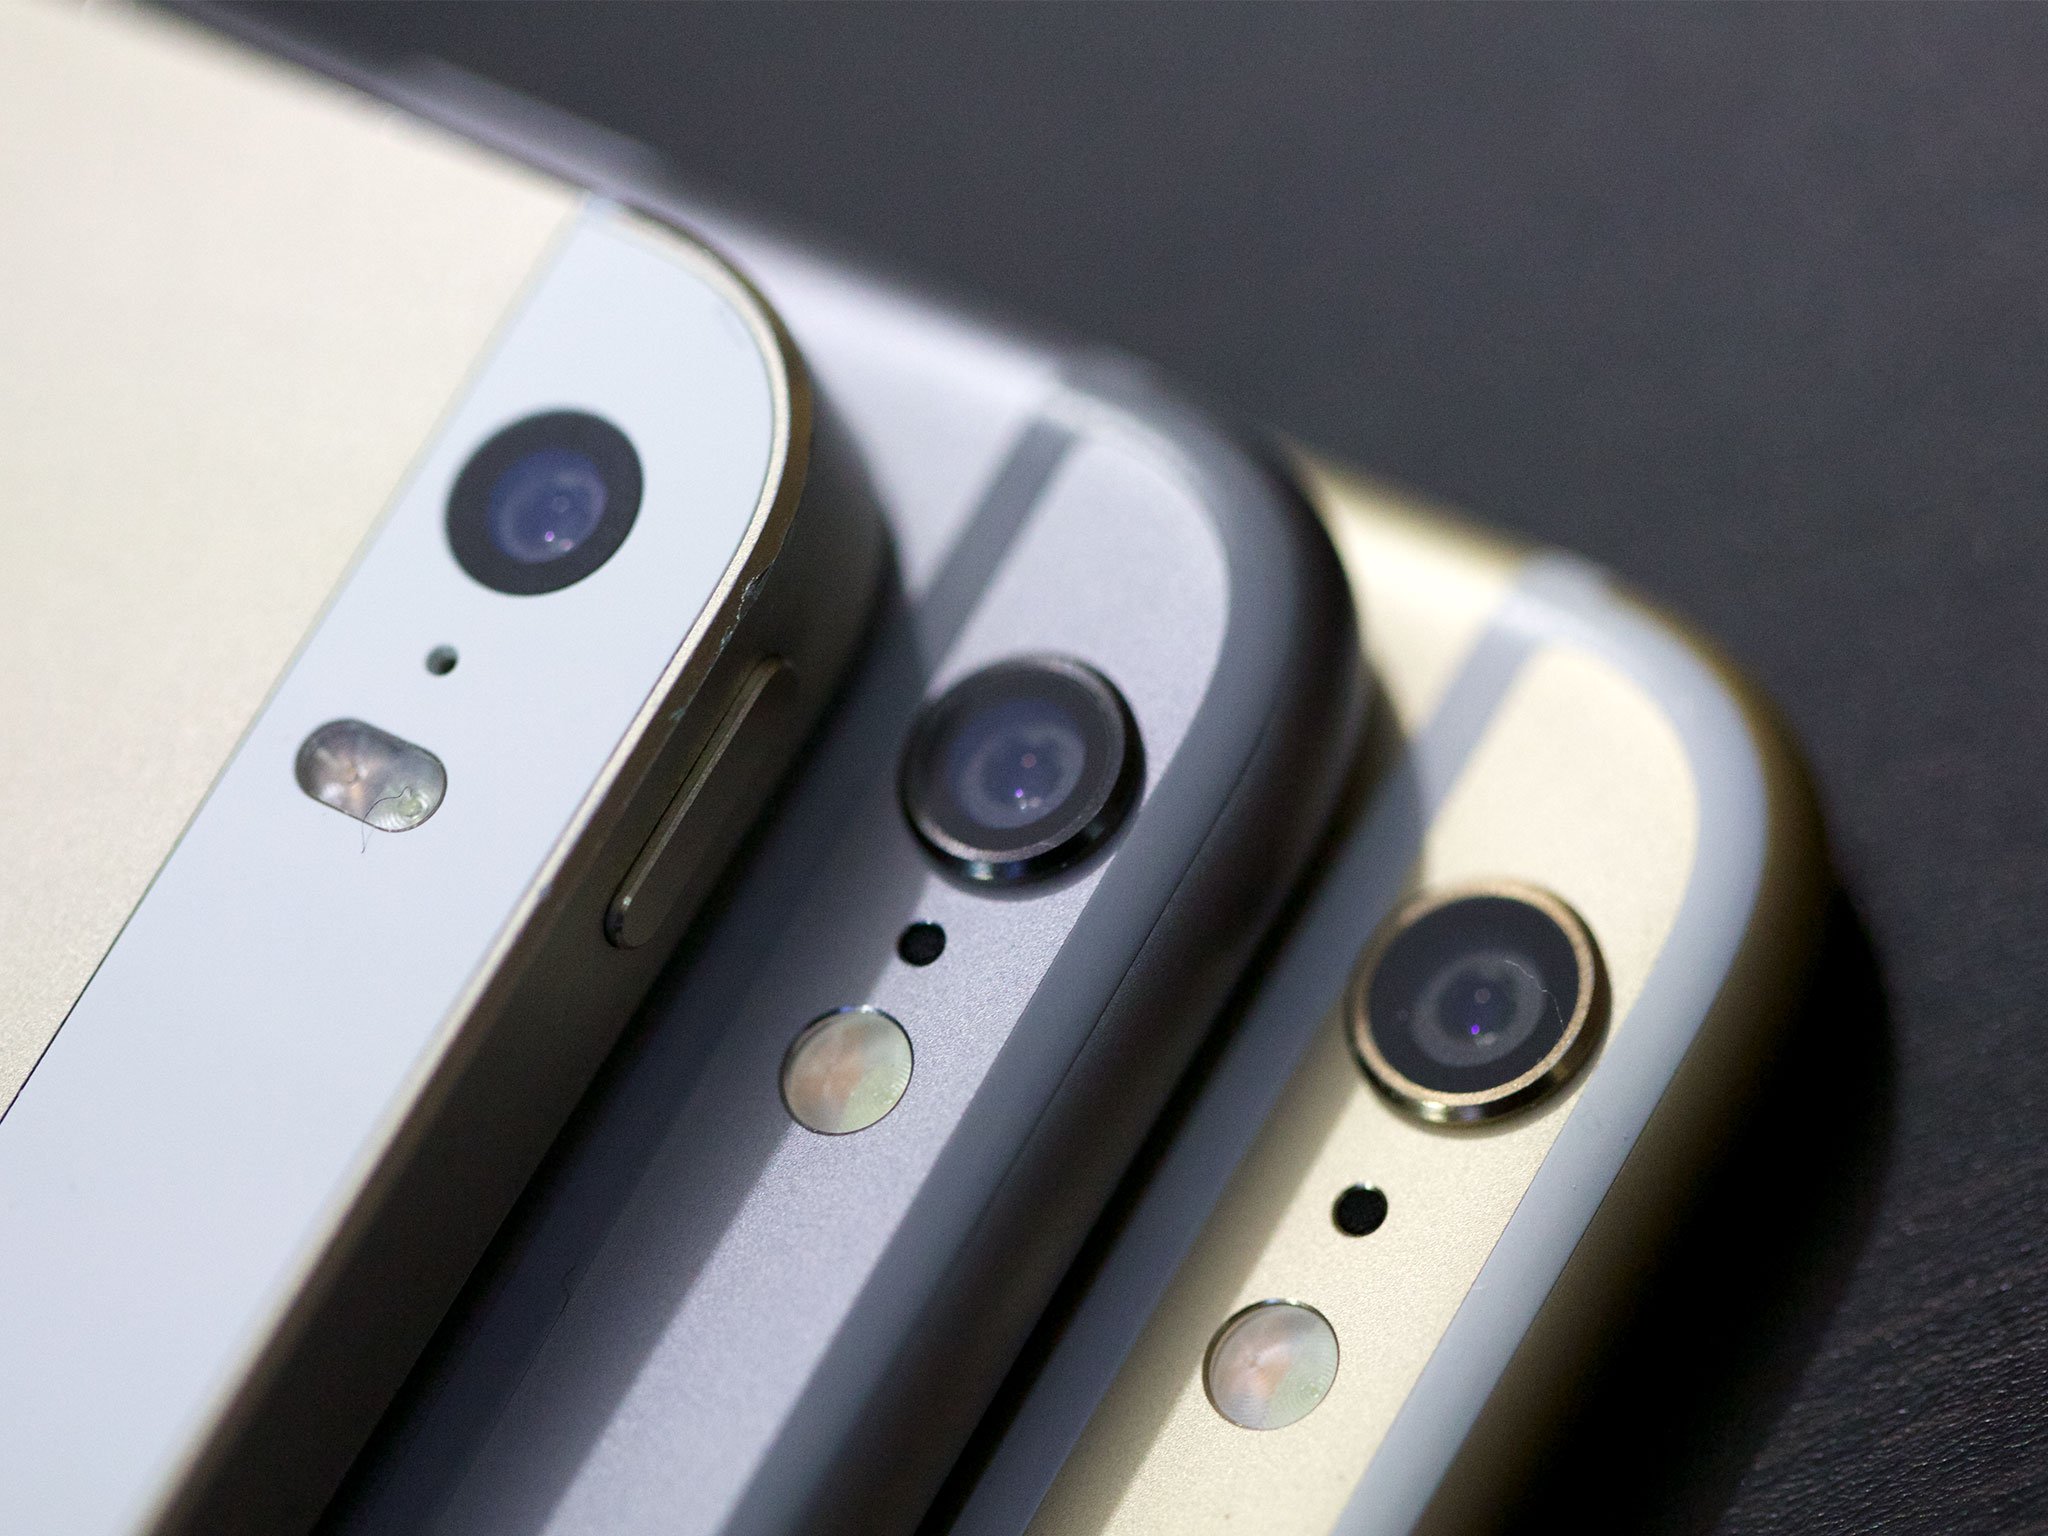 iPhone 6 Plus iSight camera